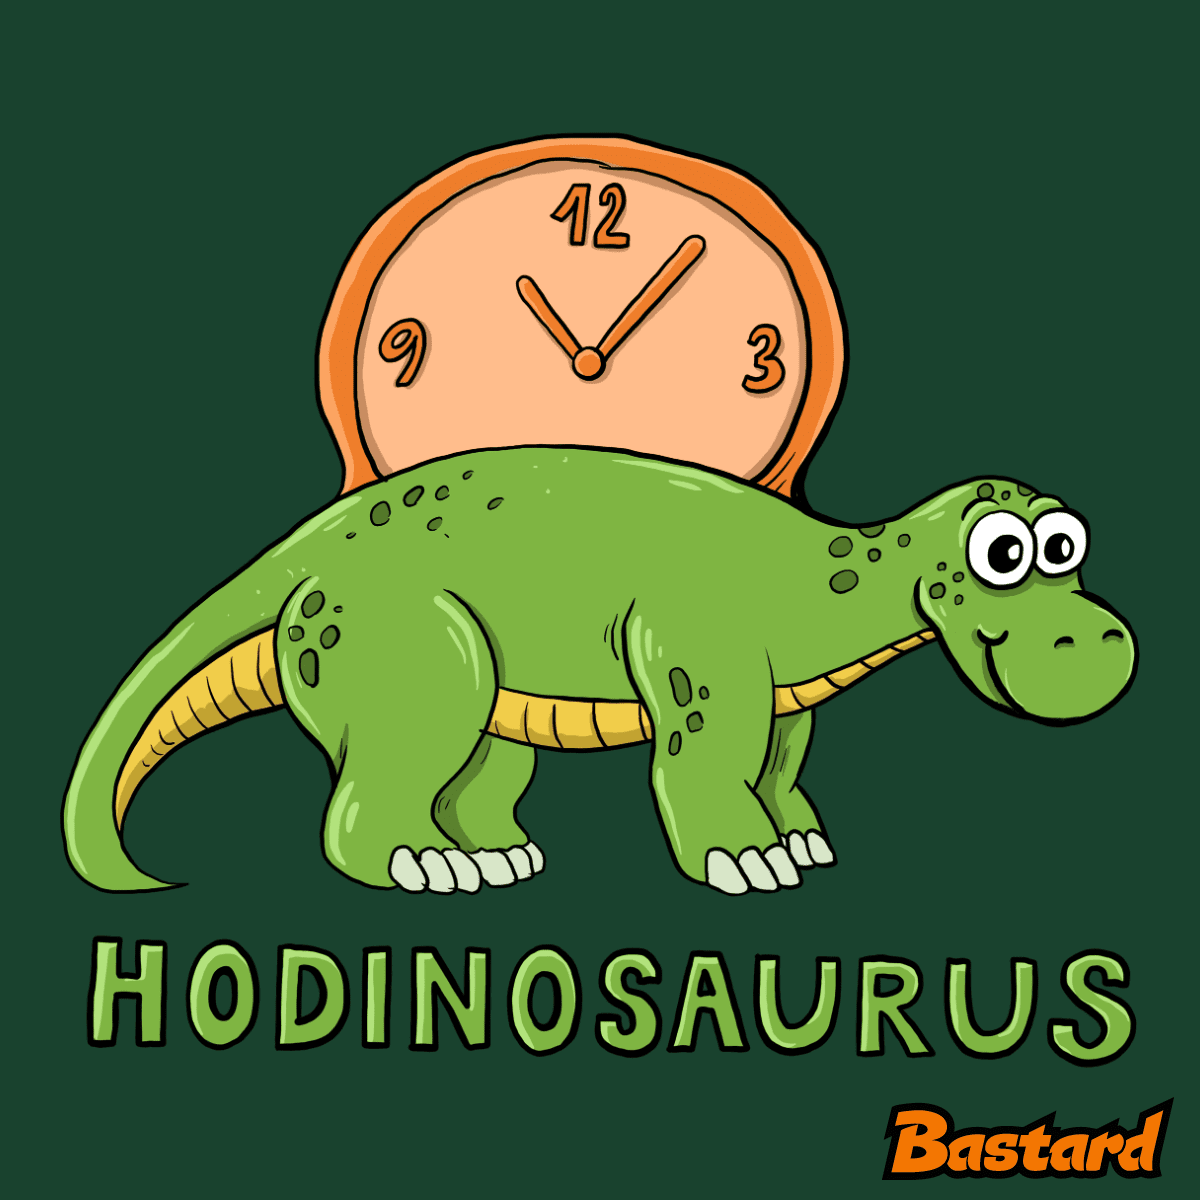 Hodinosaurus